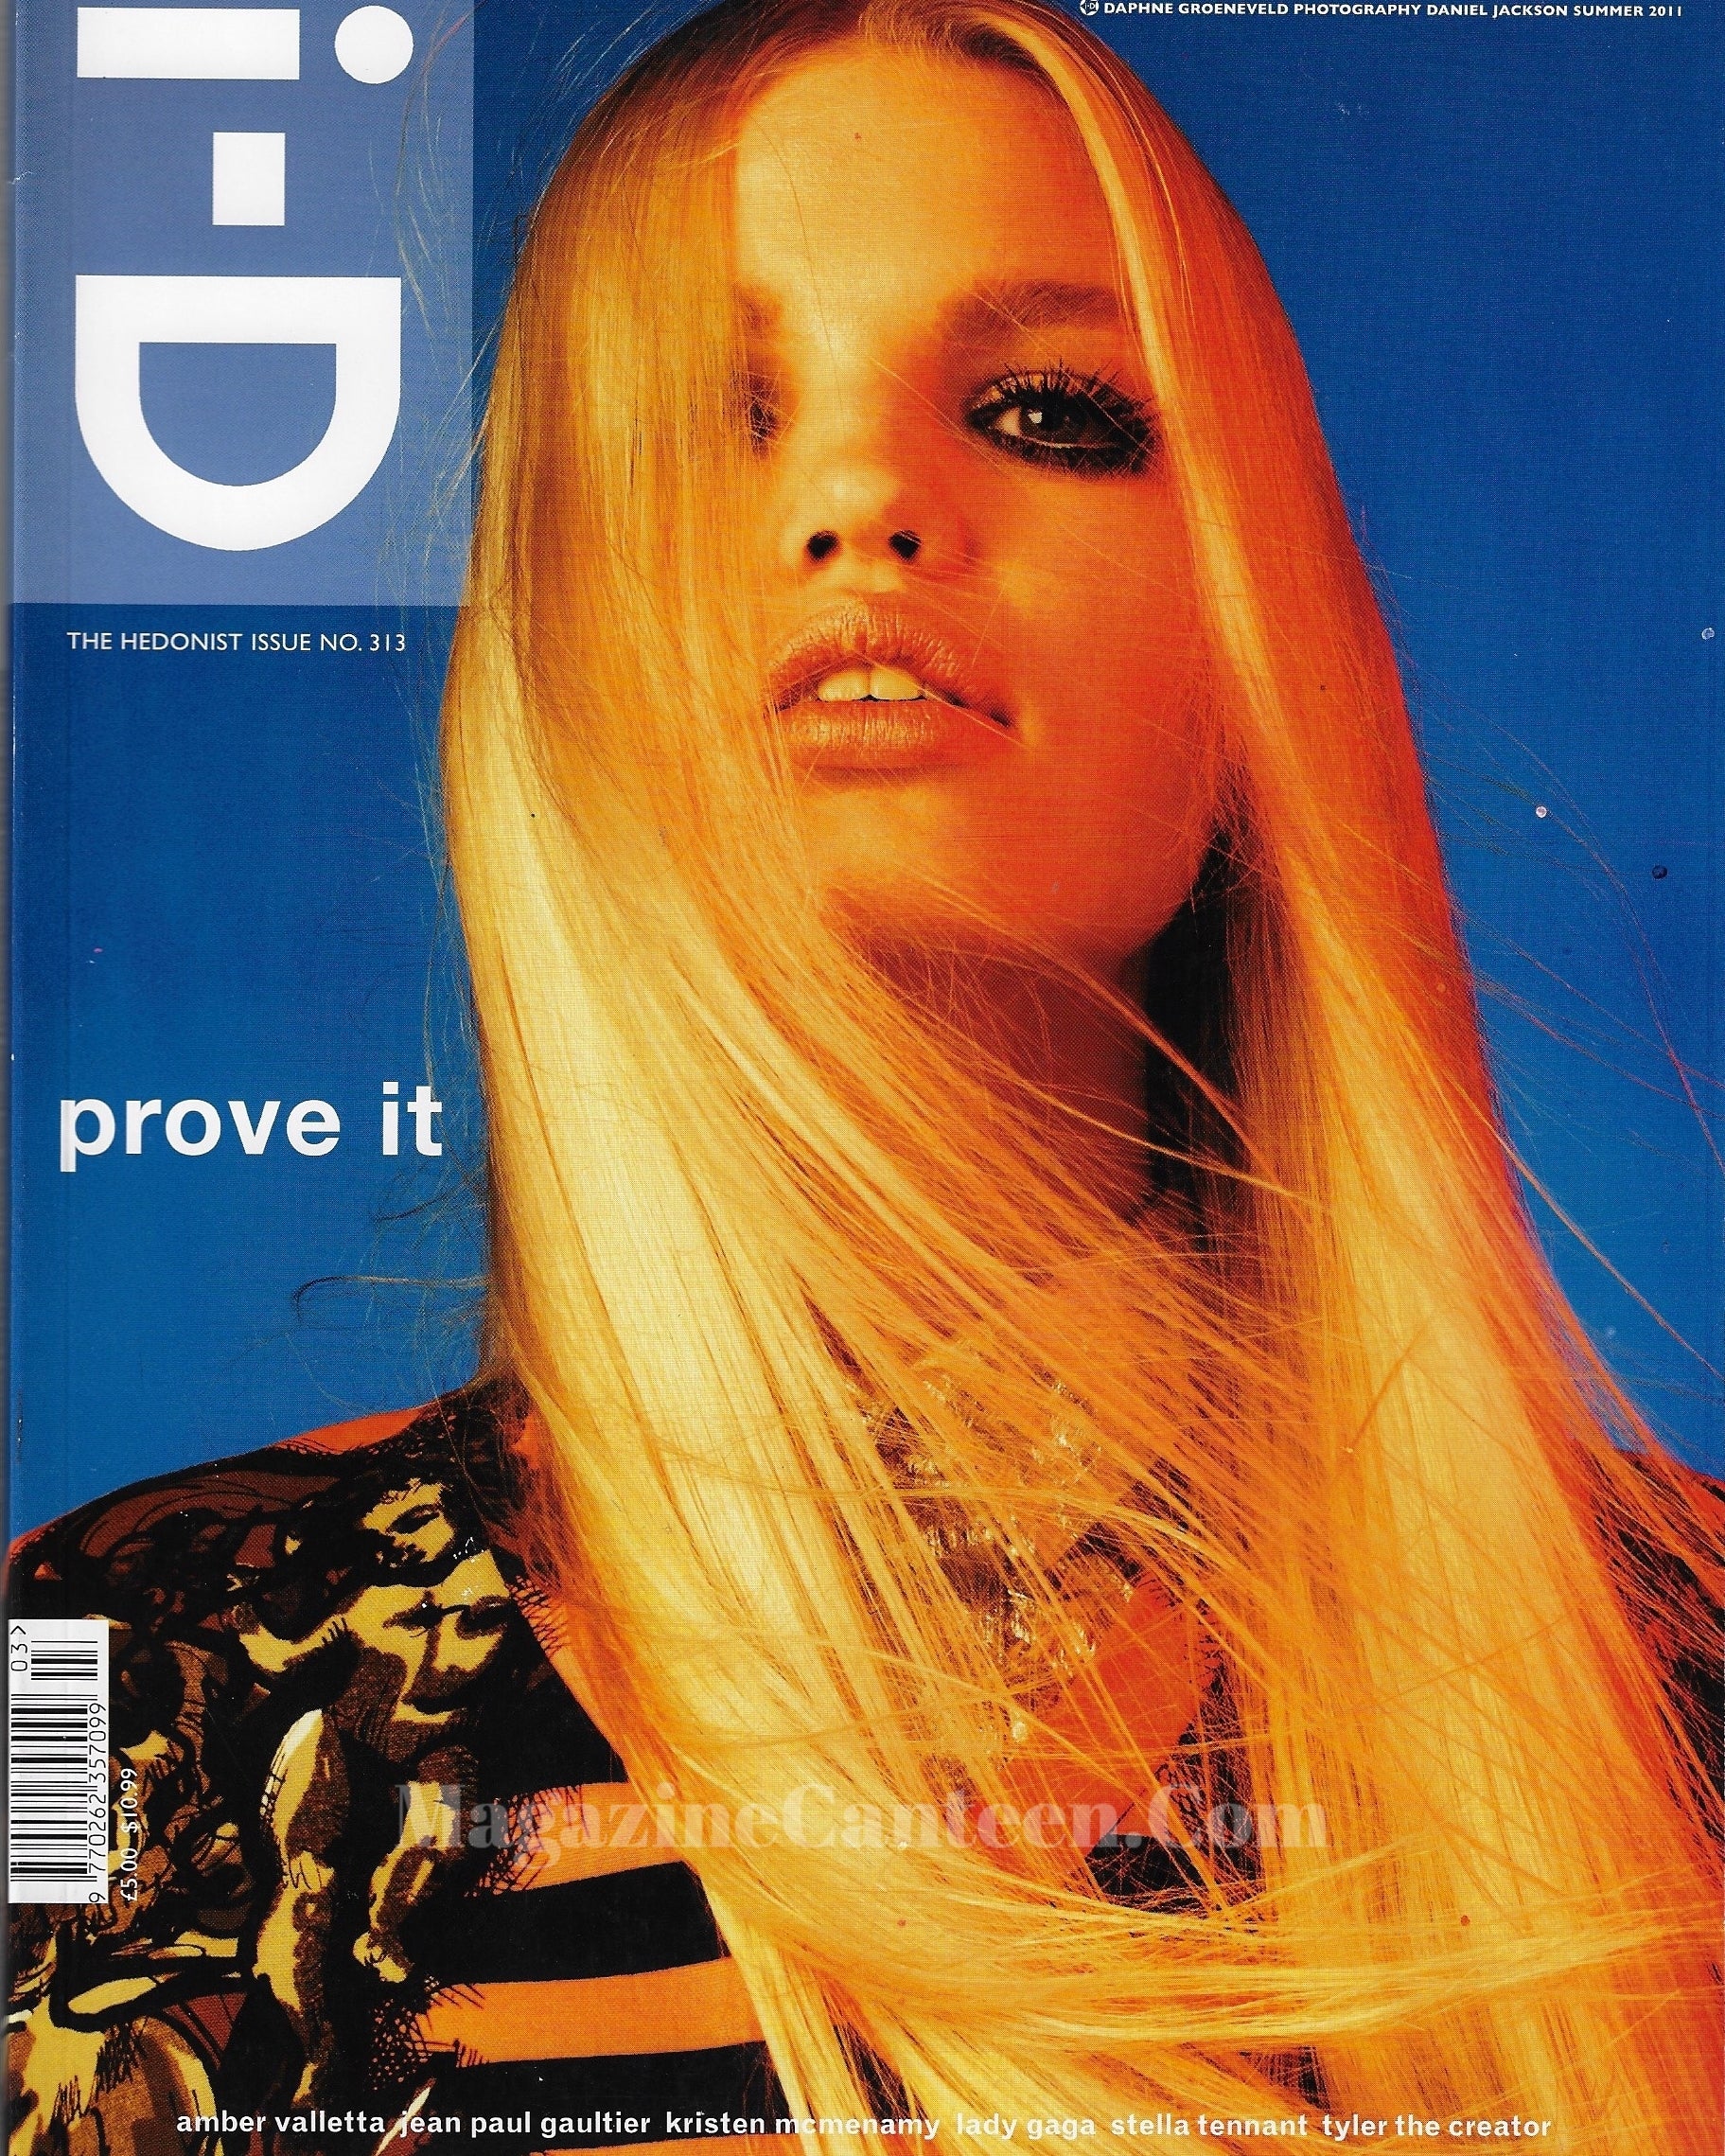 I-D Magazine 313 - Daphne Groeneveld 2011